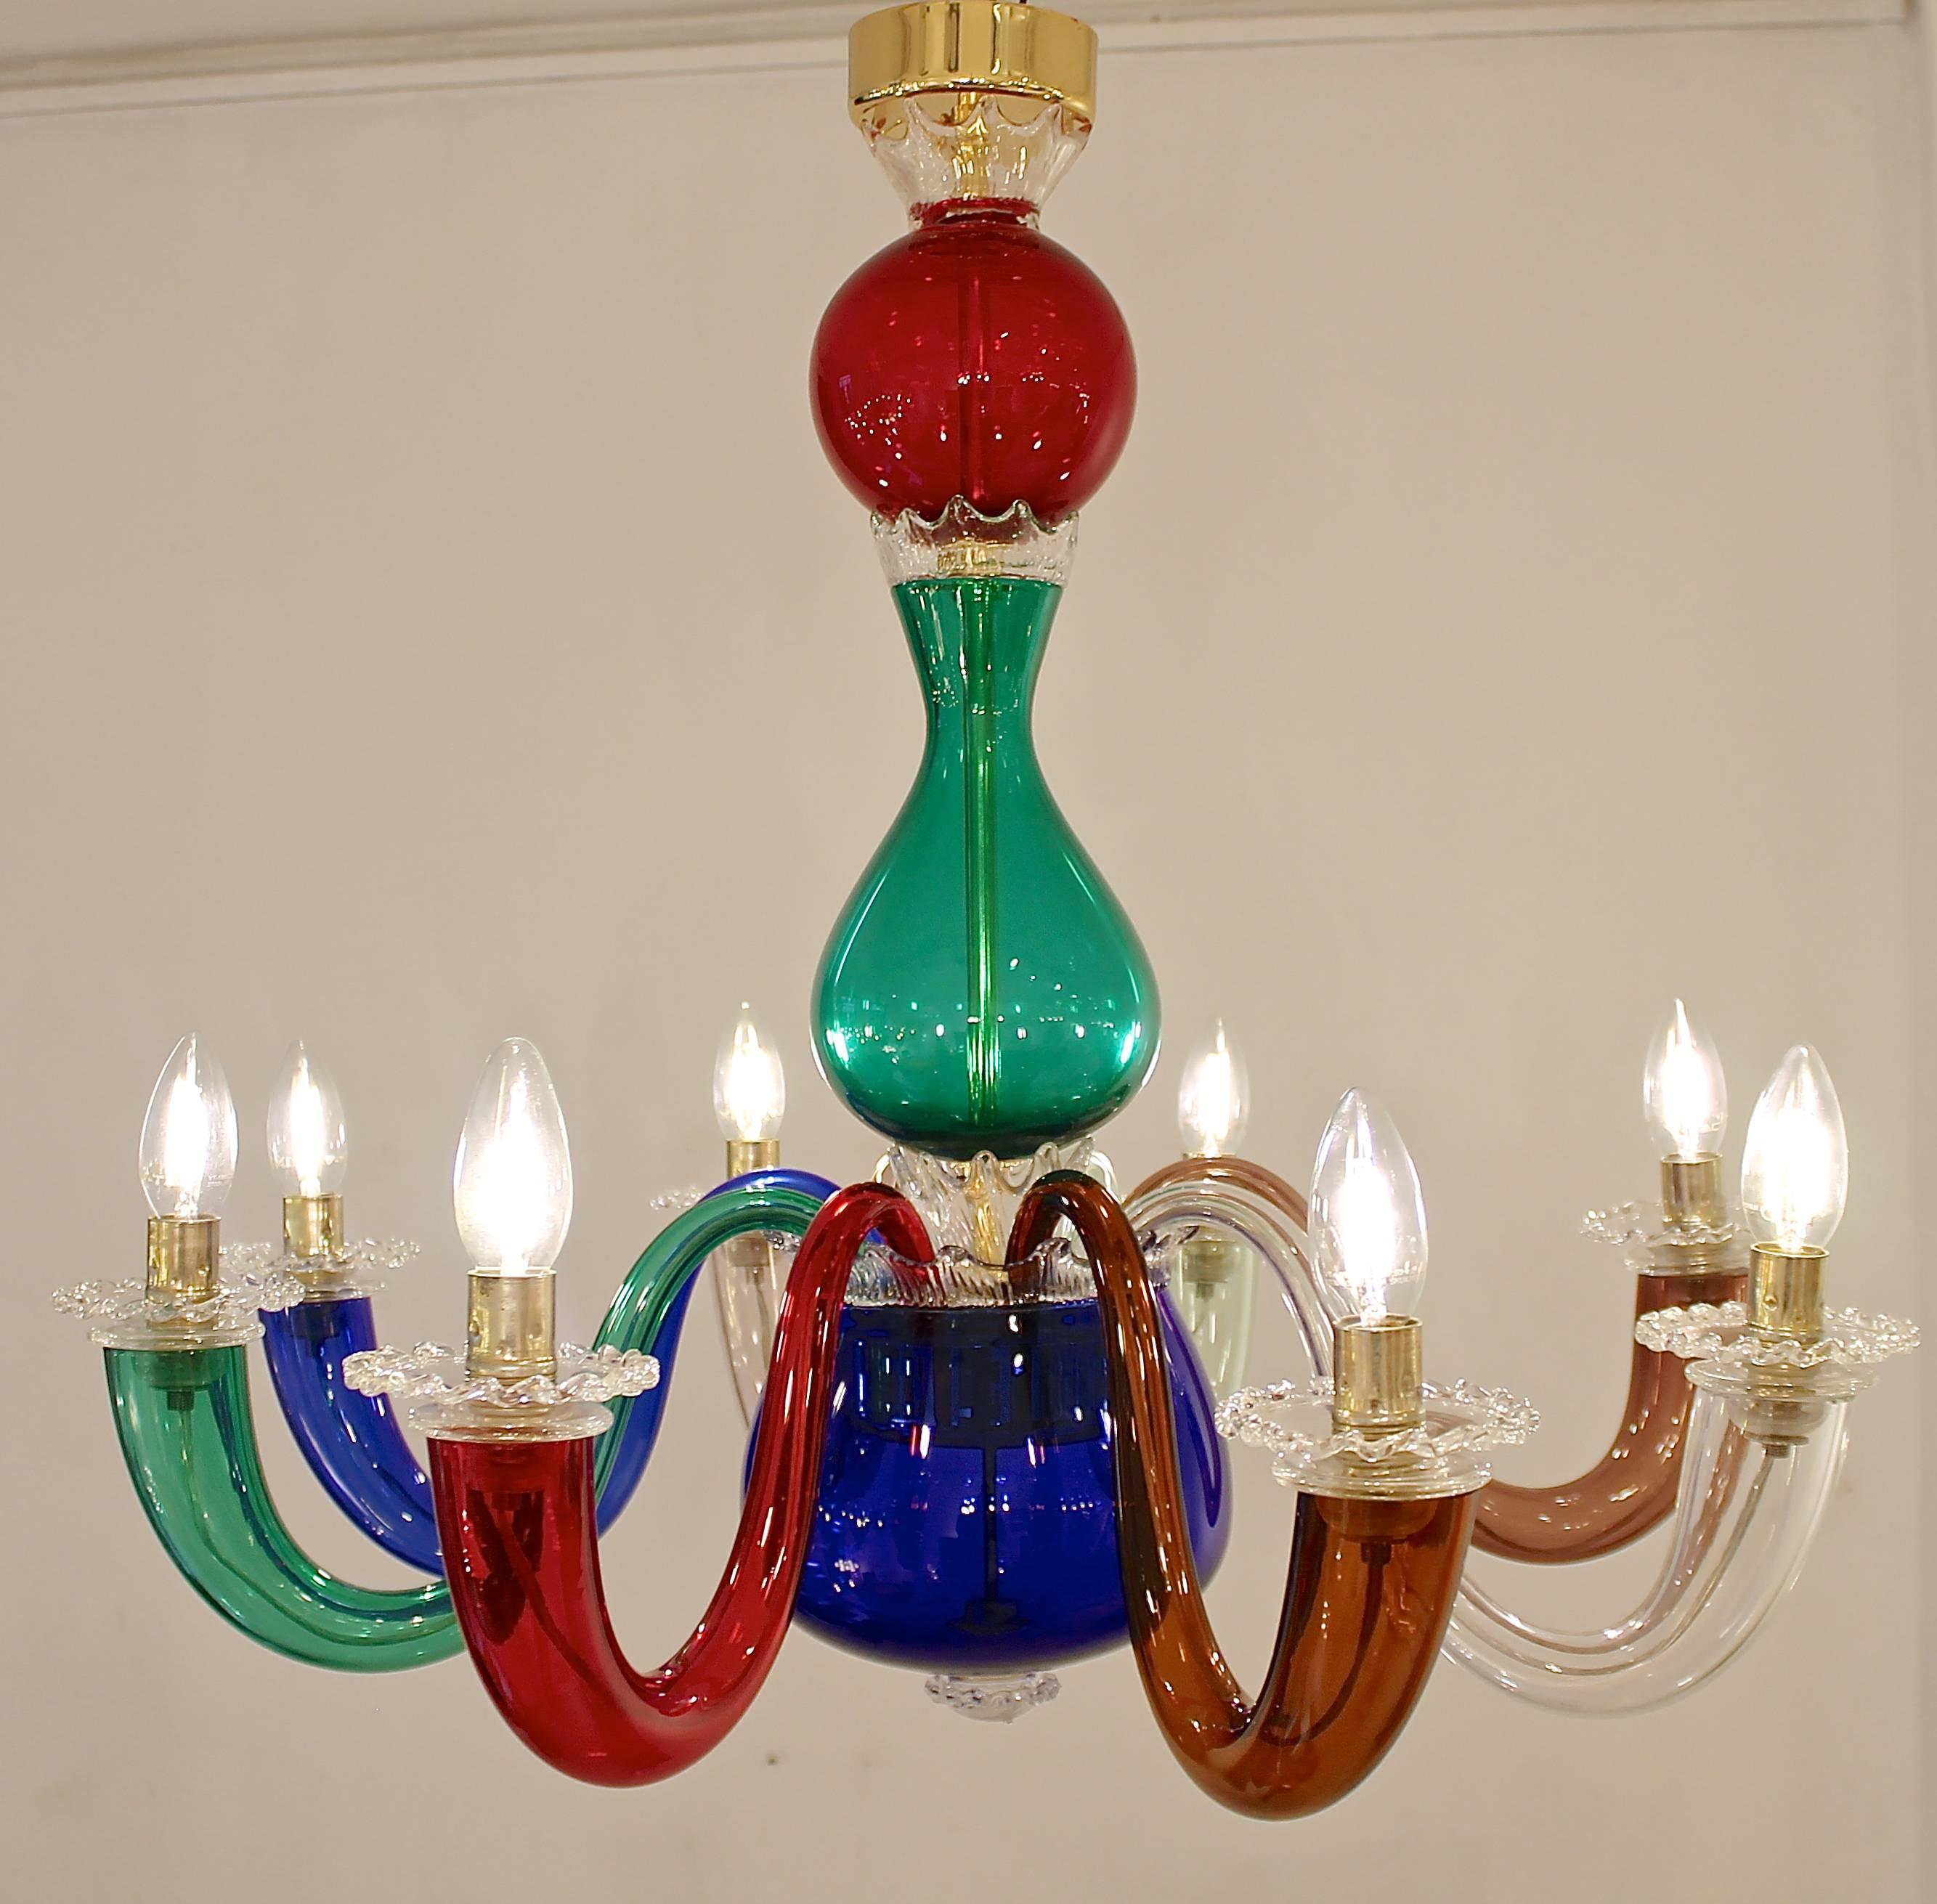 Pair of Gio Ponti for Venini Murano chandeliers in multicolored blown glass.